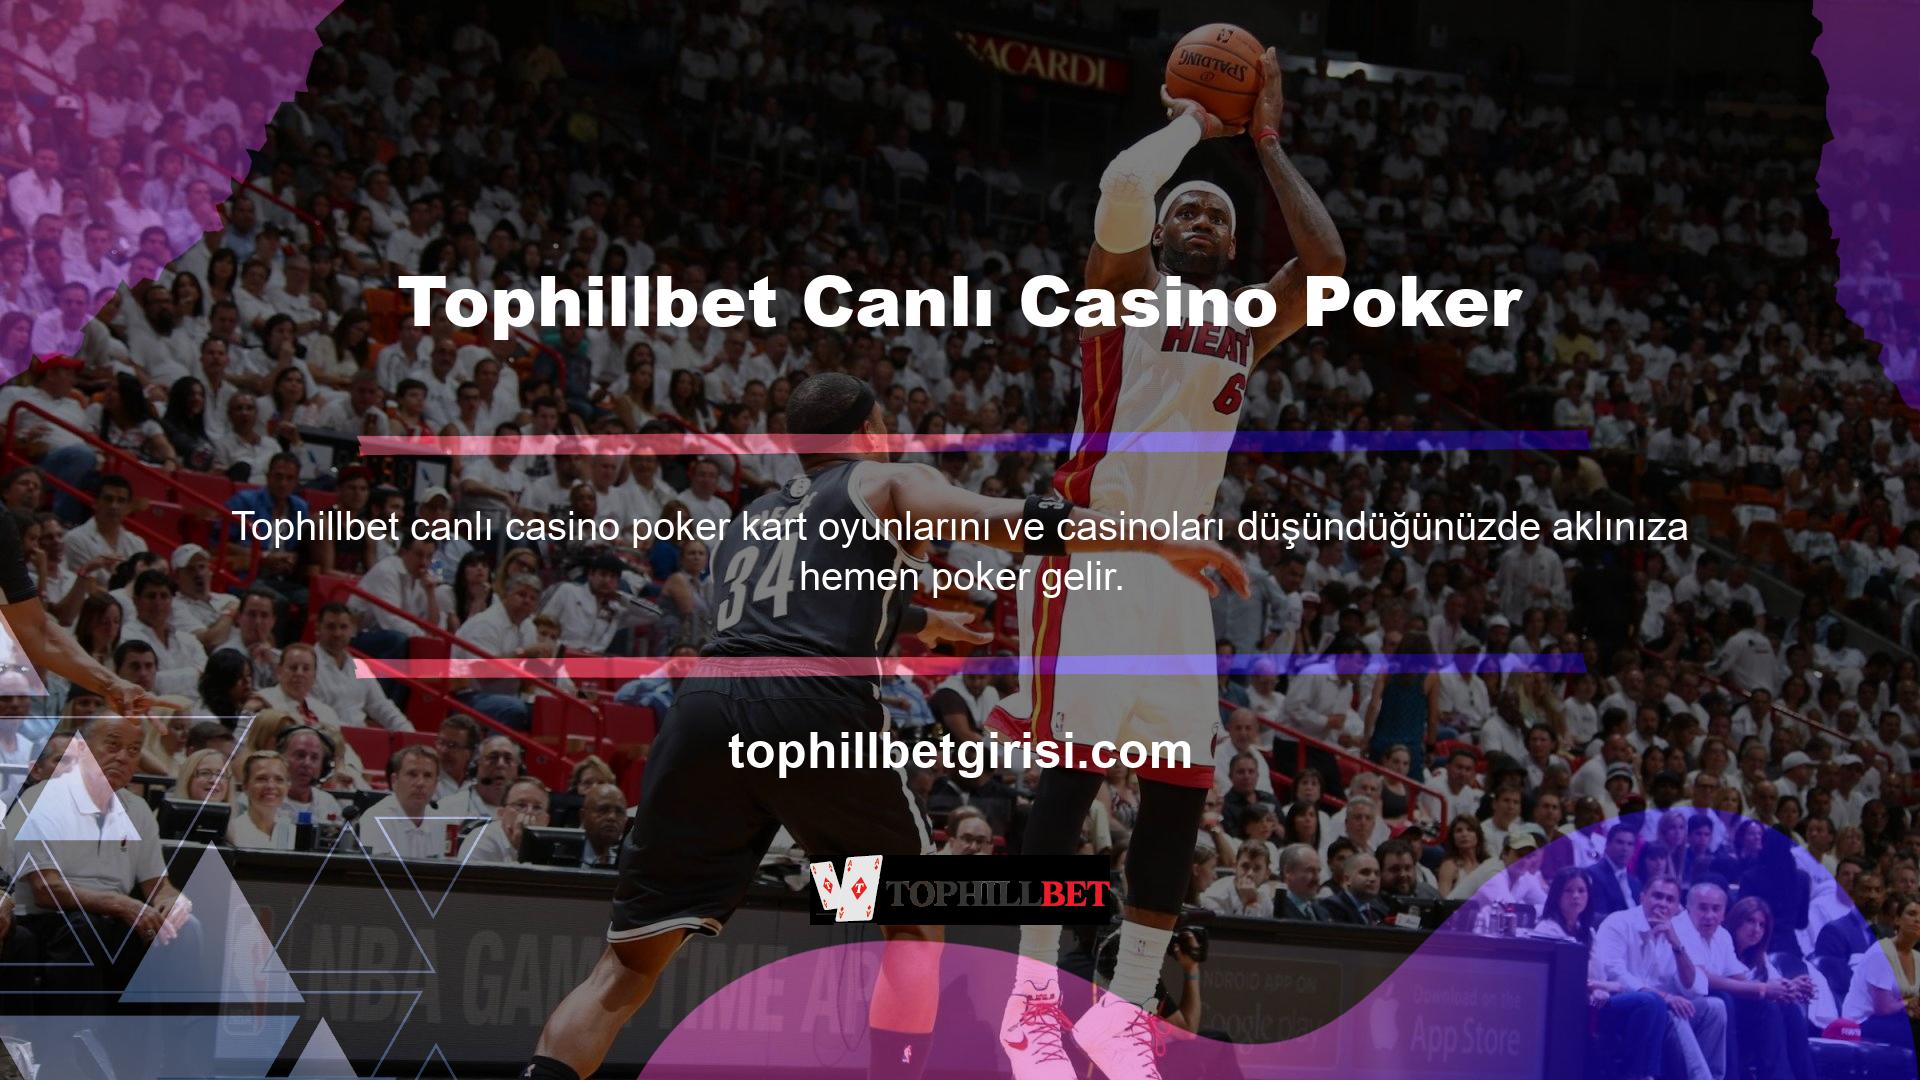 Tophillbet Canlı Casino Poker web sitesinde çeşitli seçenekler mevcuttur